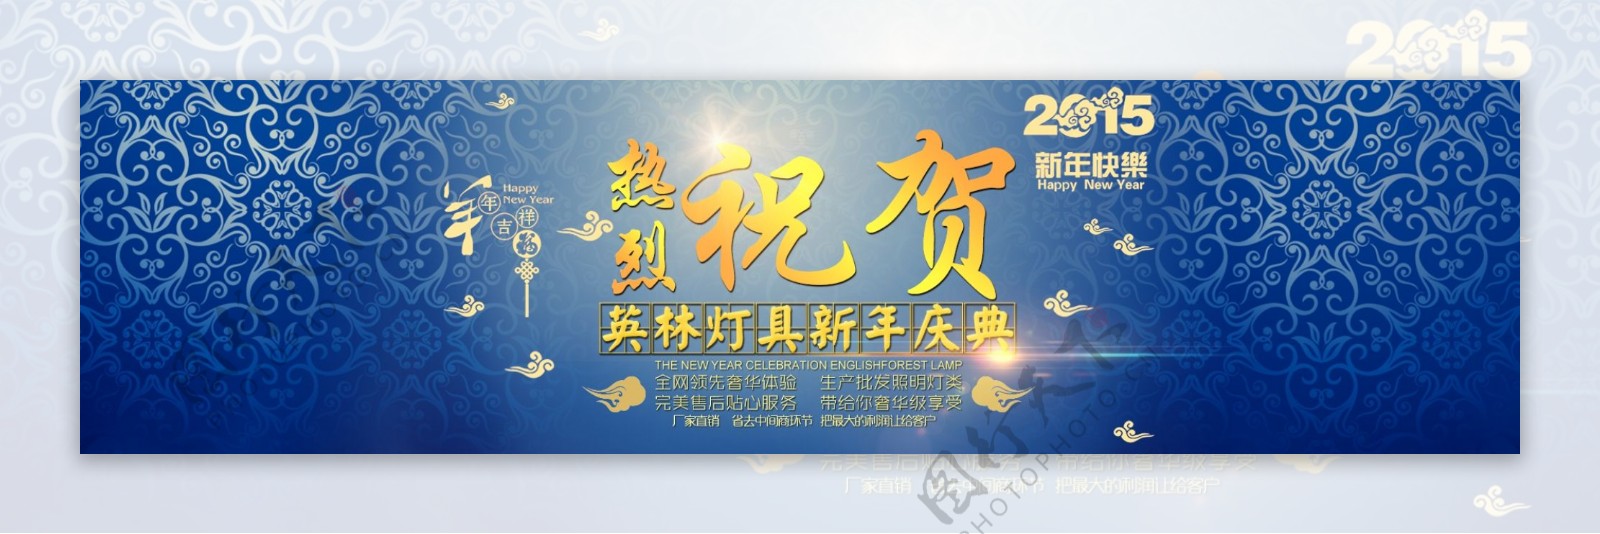 2015羊年中国风企业新年庆典轮播图